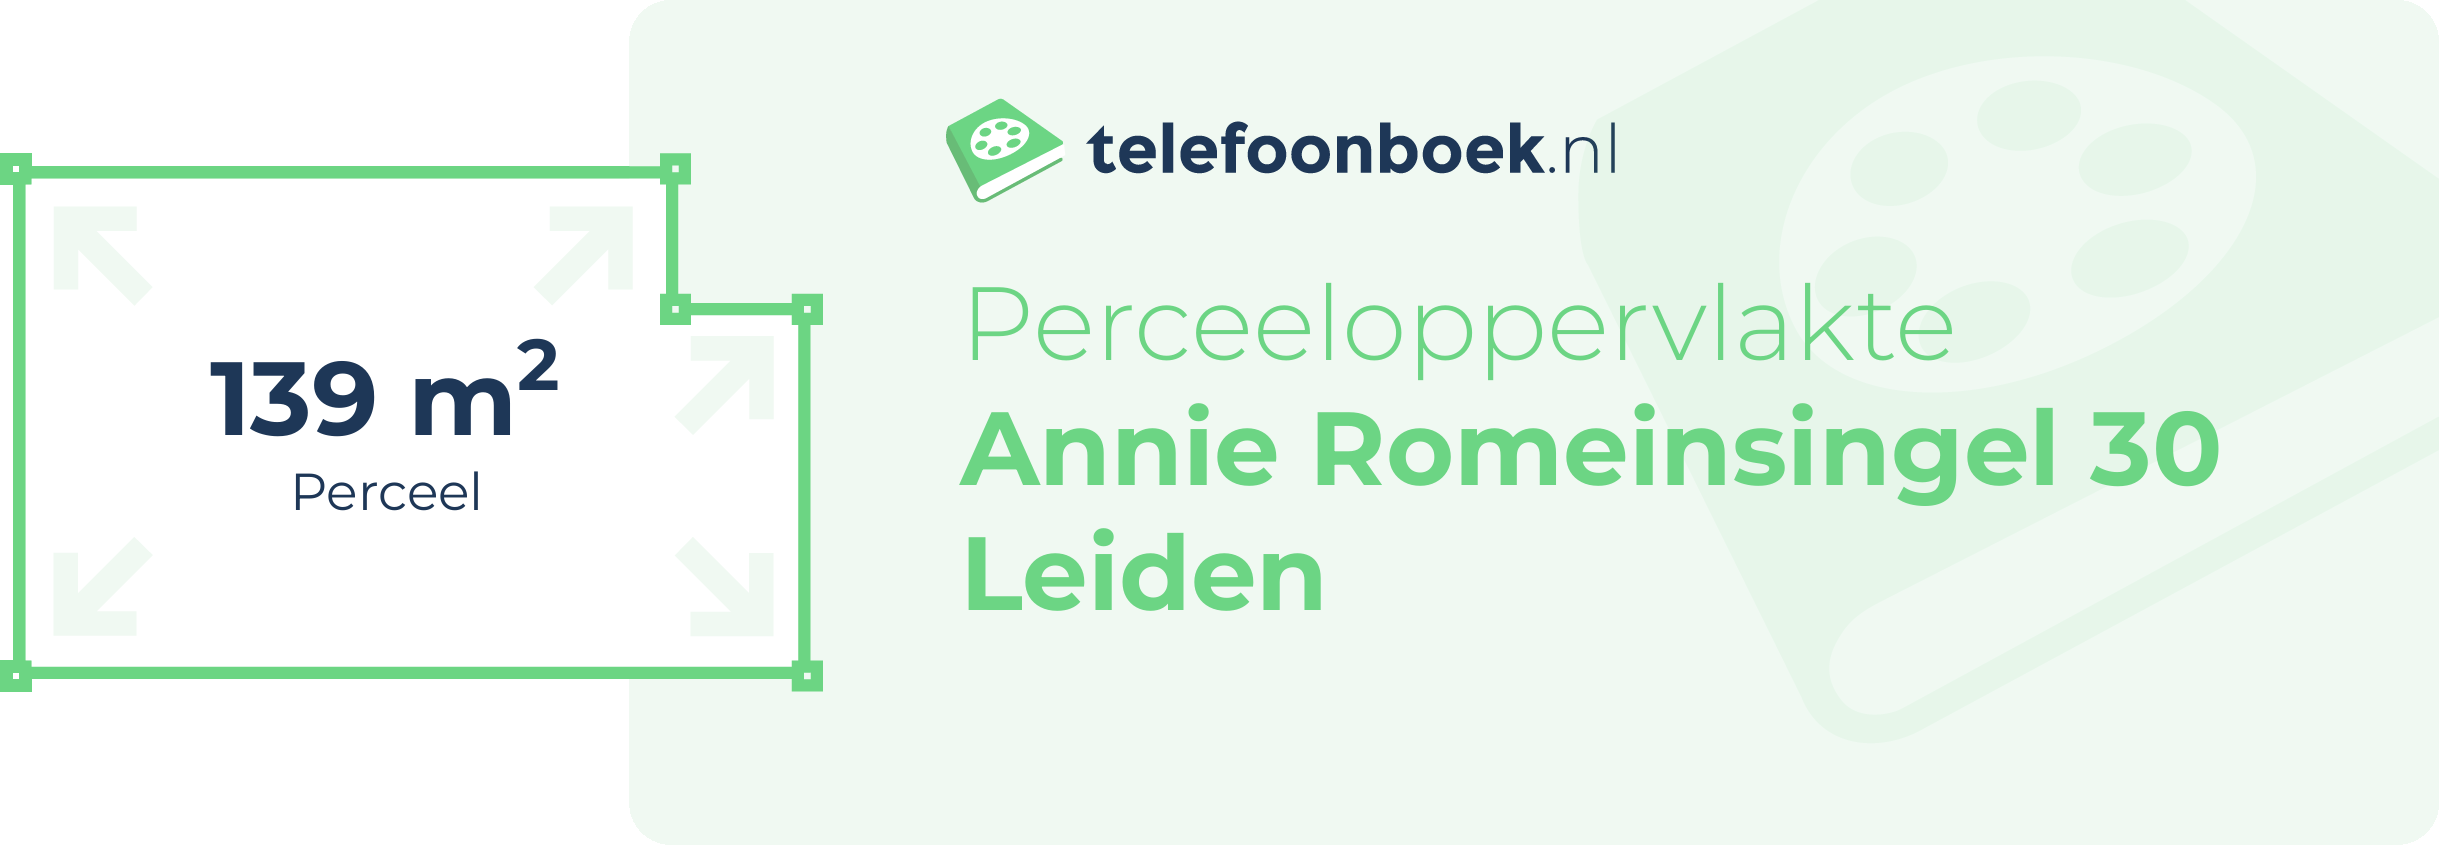 Perceeloppervlakte Annie Romeinsingel 30 Leiden